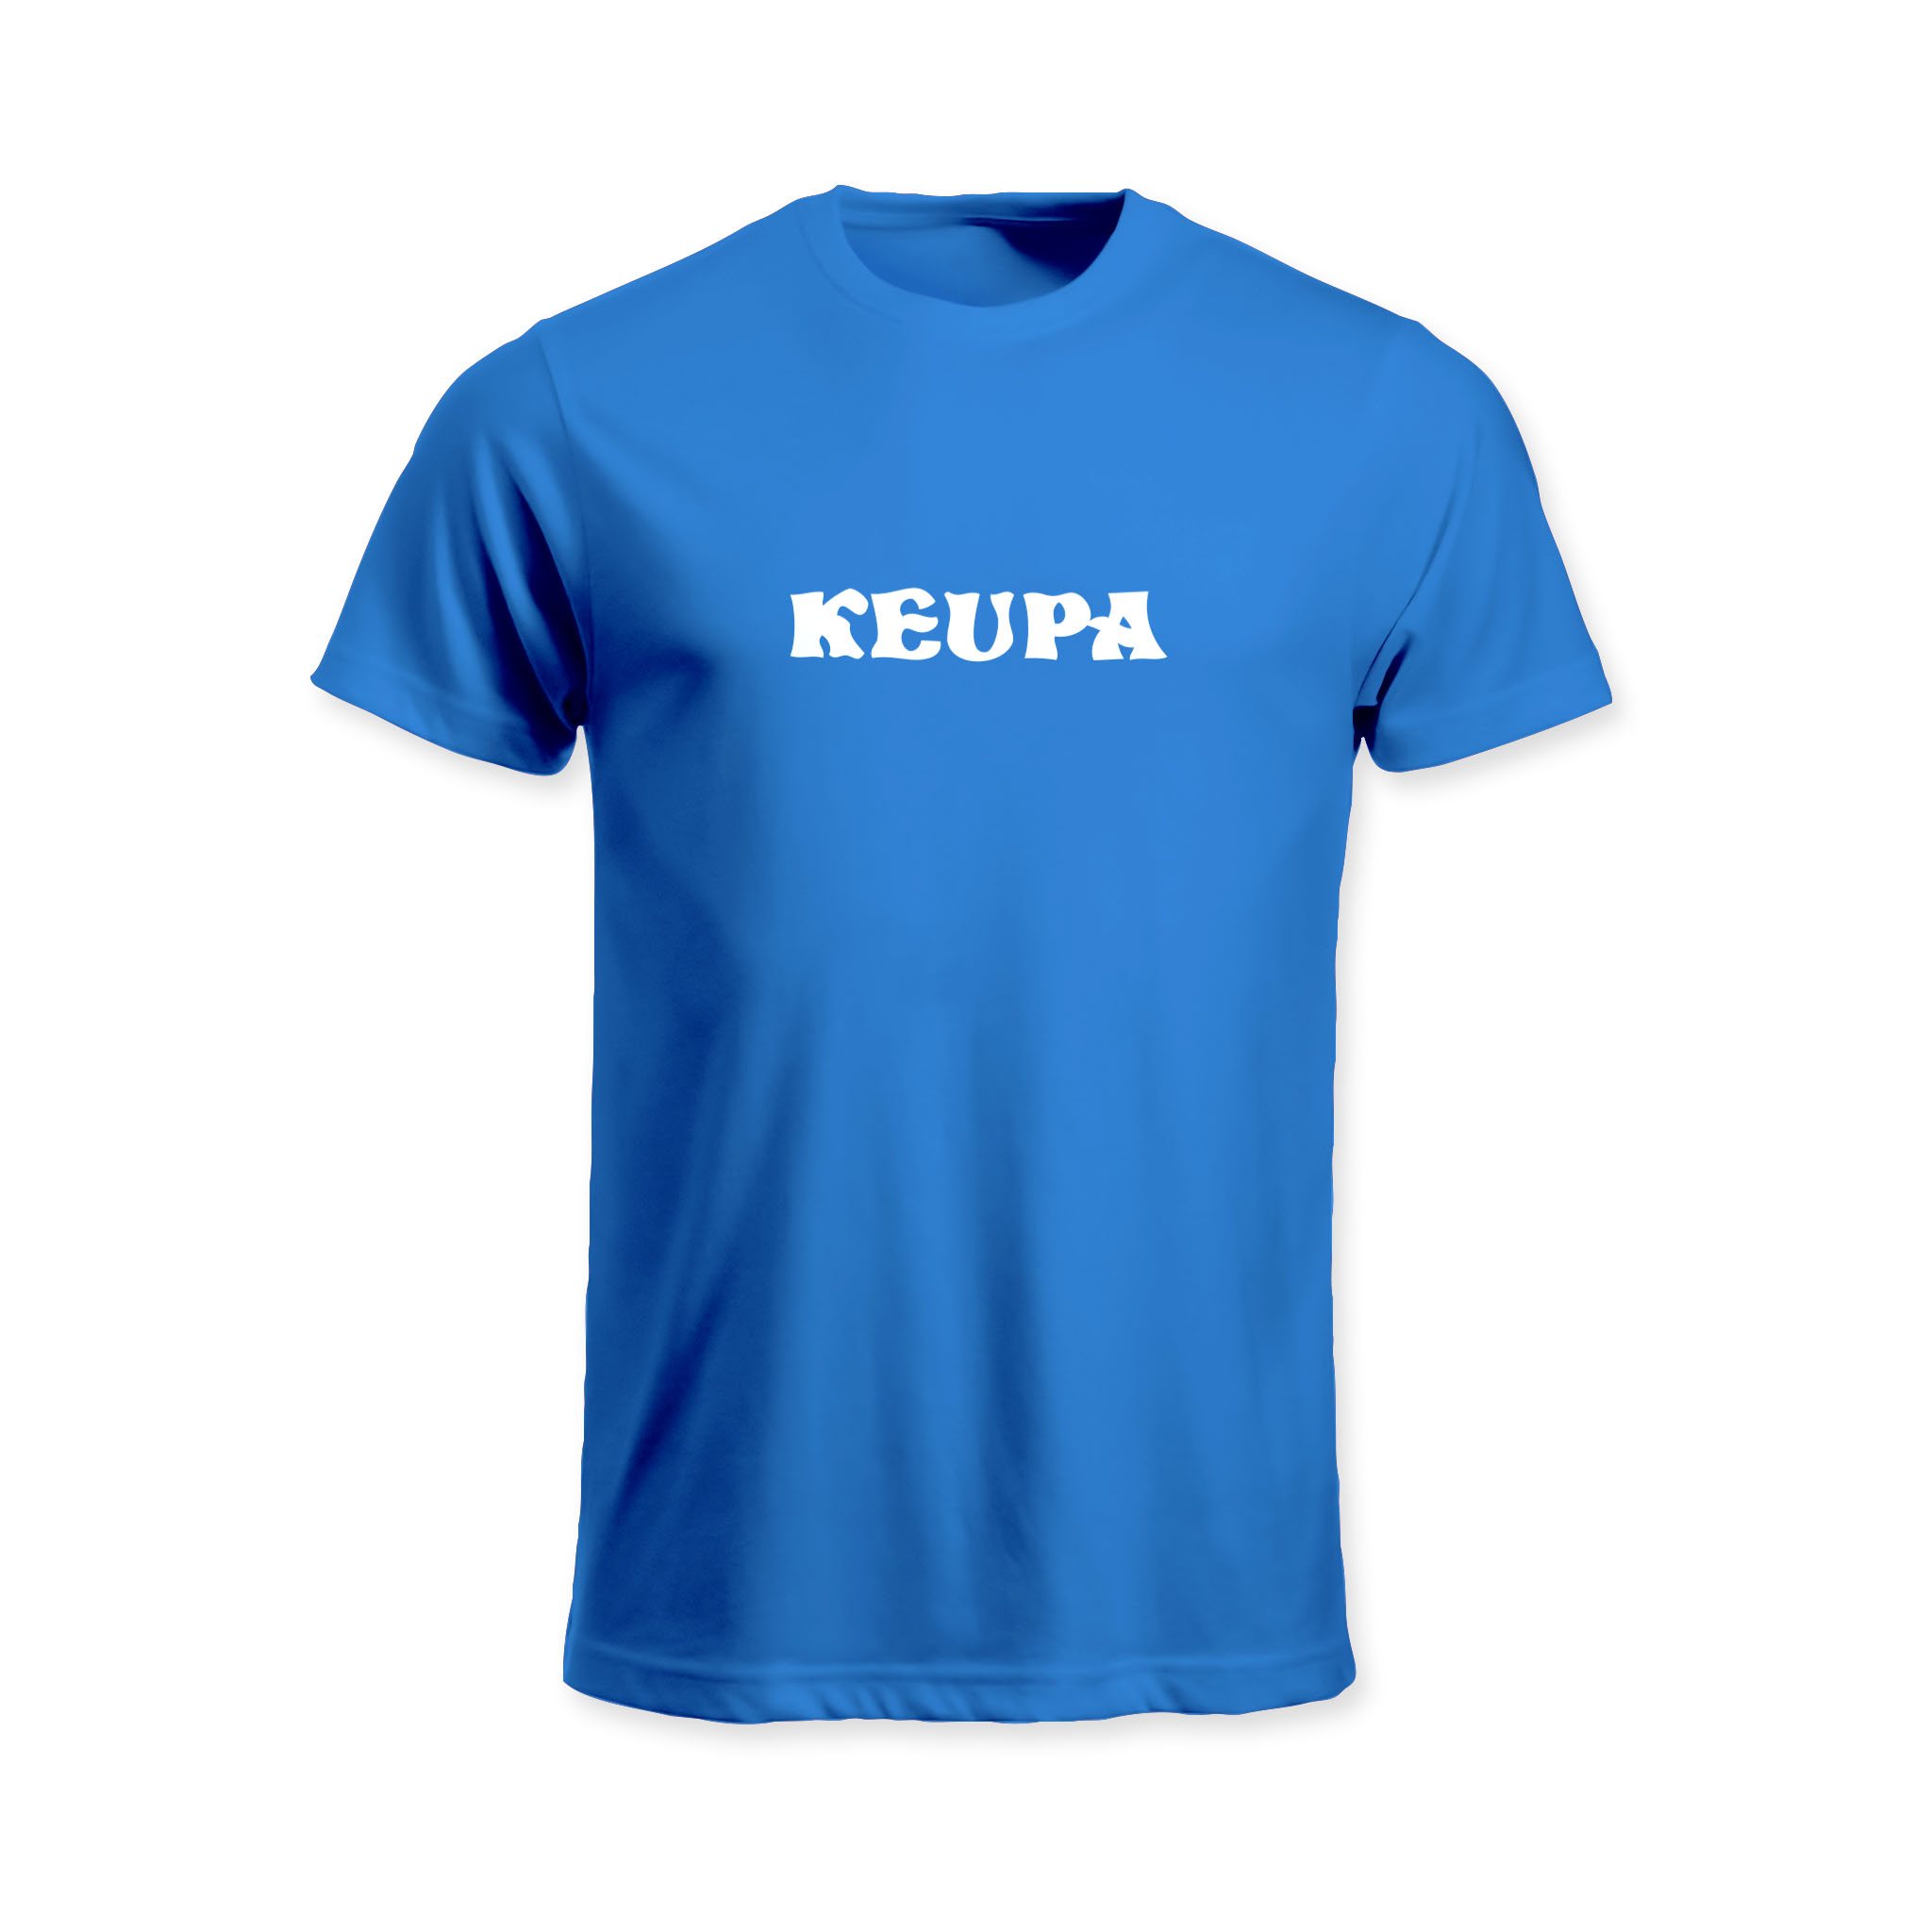 KeuPa T-paita / teksti